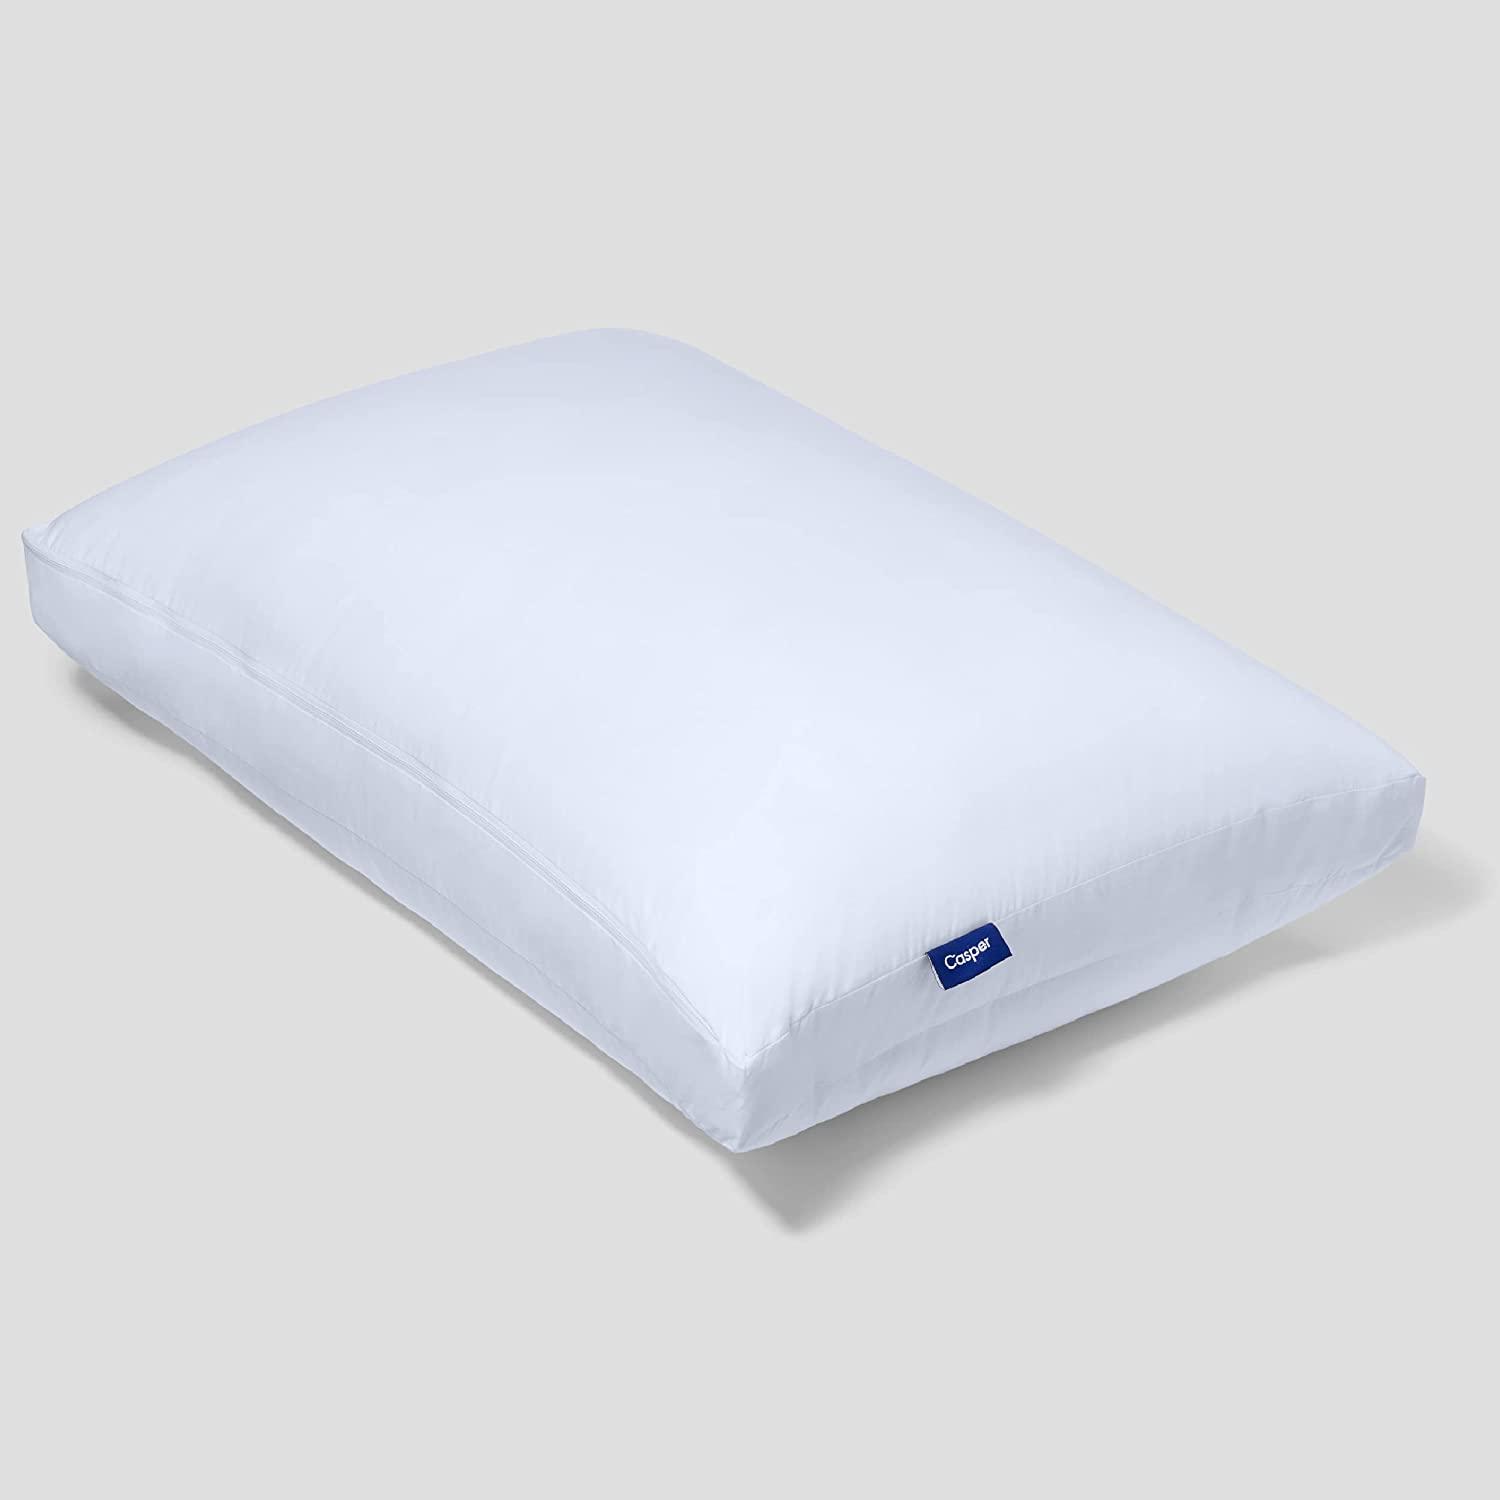 Casper Original Bed King Pillow for $50.99 Shipped